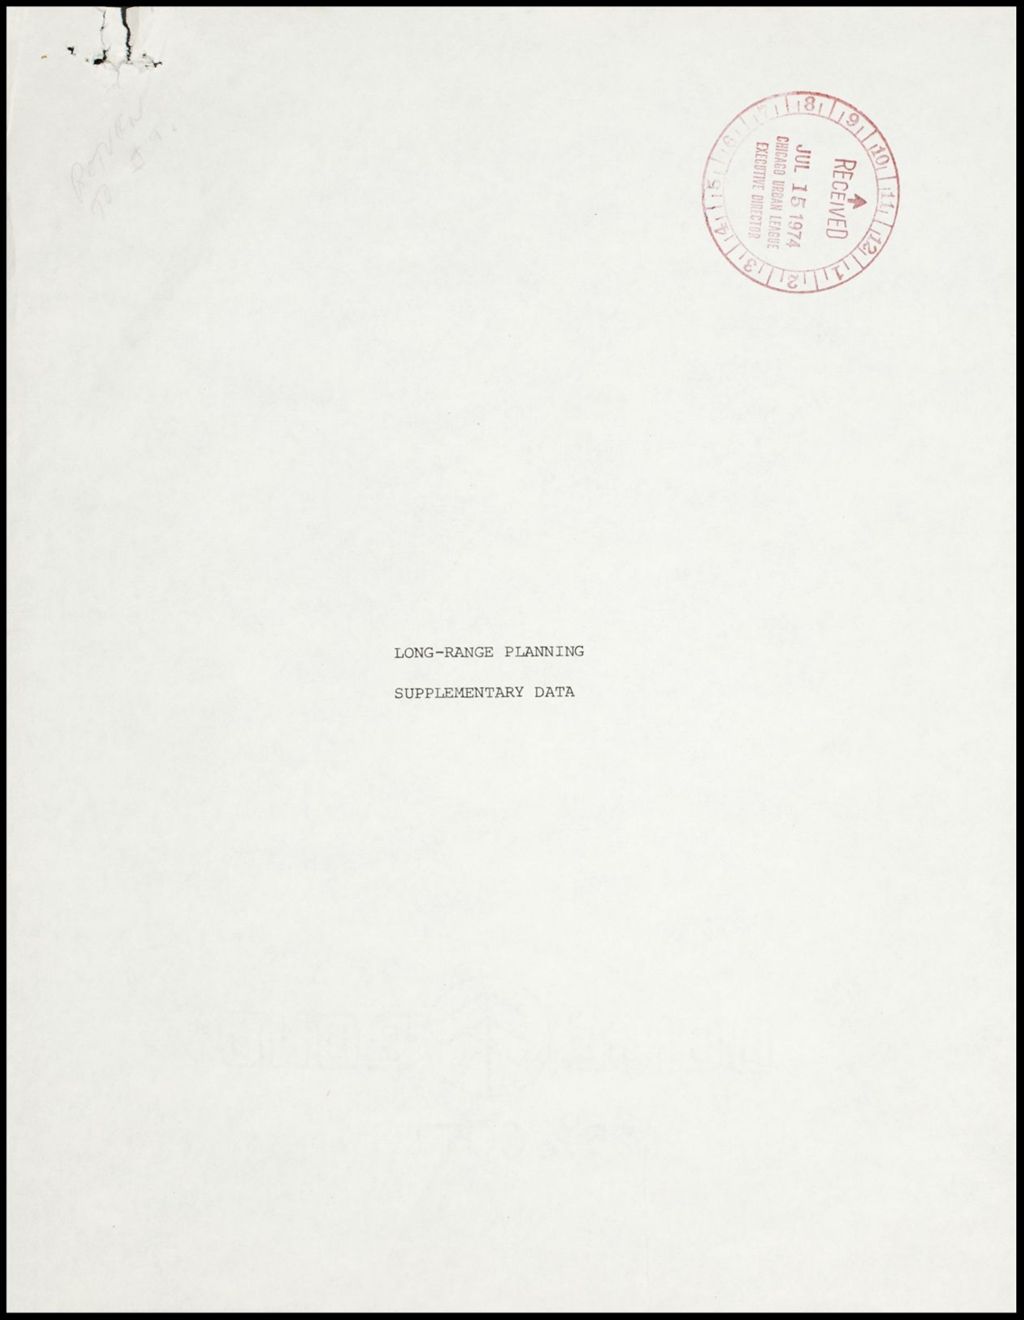 Miniature of Long-Range planning supplementary data, 1974 (Folder I-378)